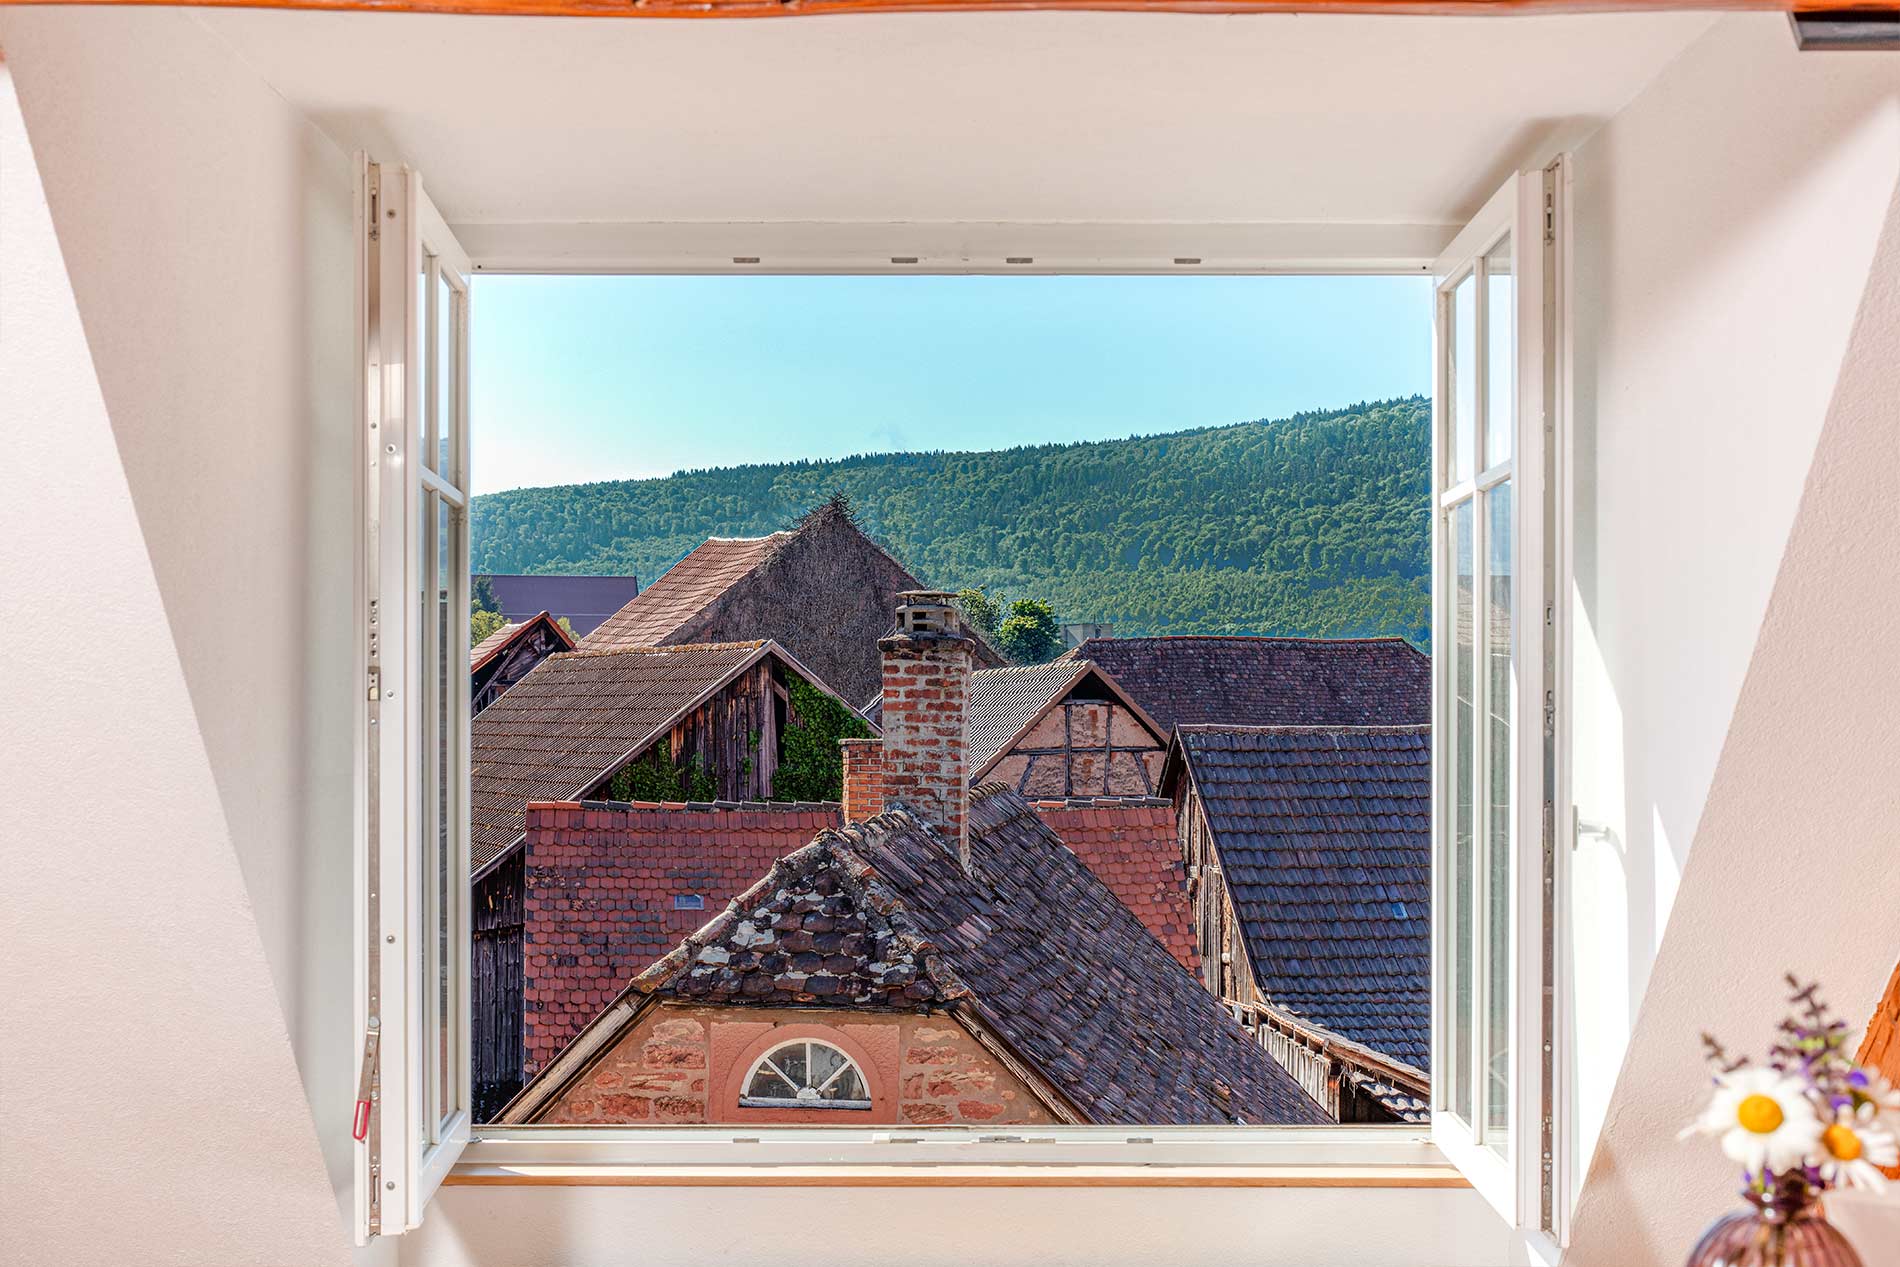 Offenes Fenster mit Blick über Dächer